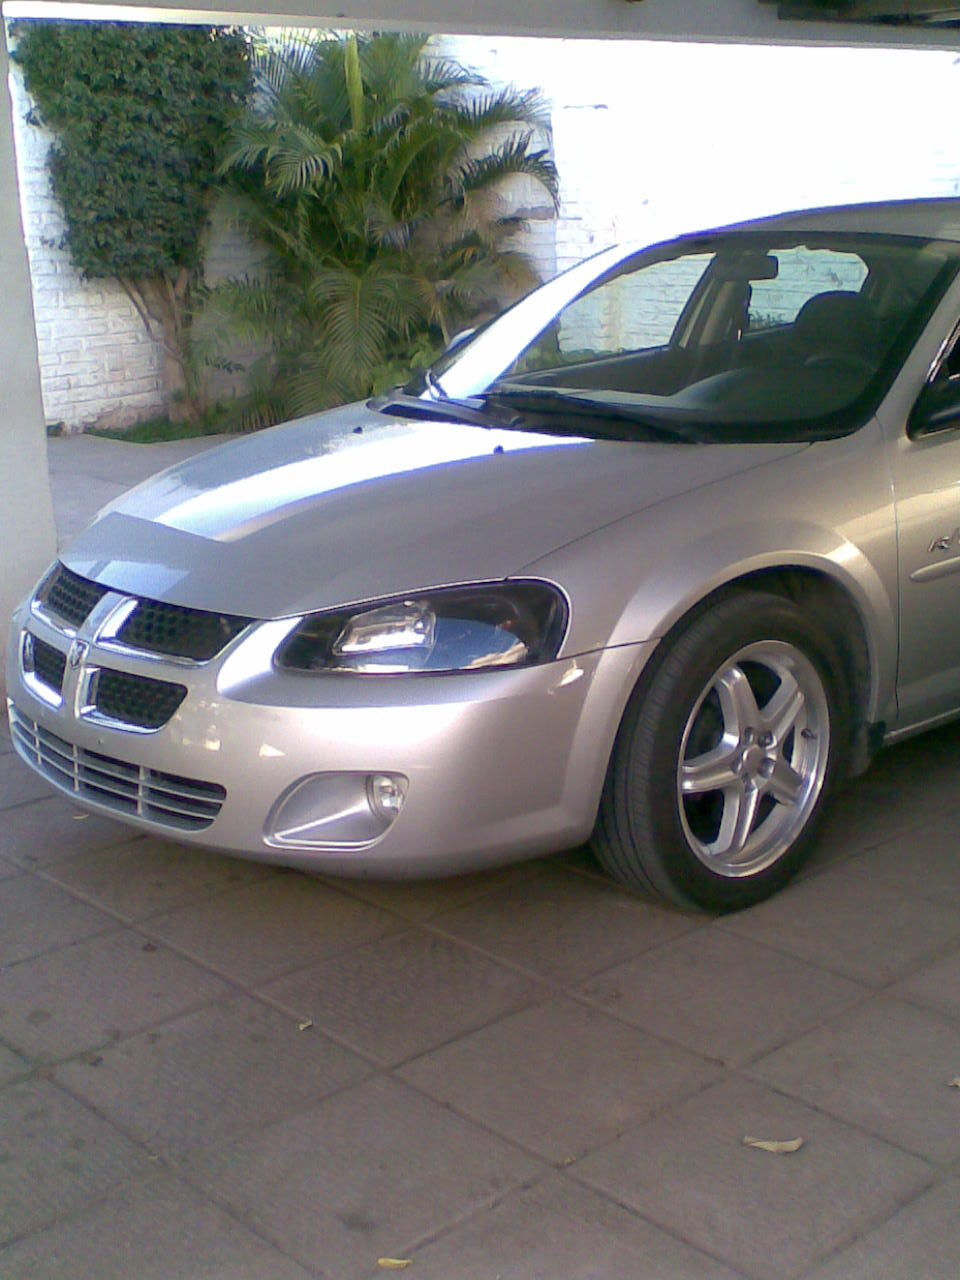  2005 Dodge Stratus R/T (Mexican)